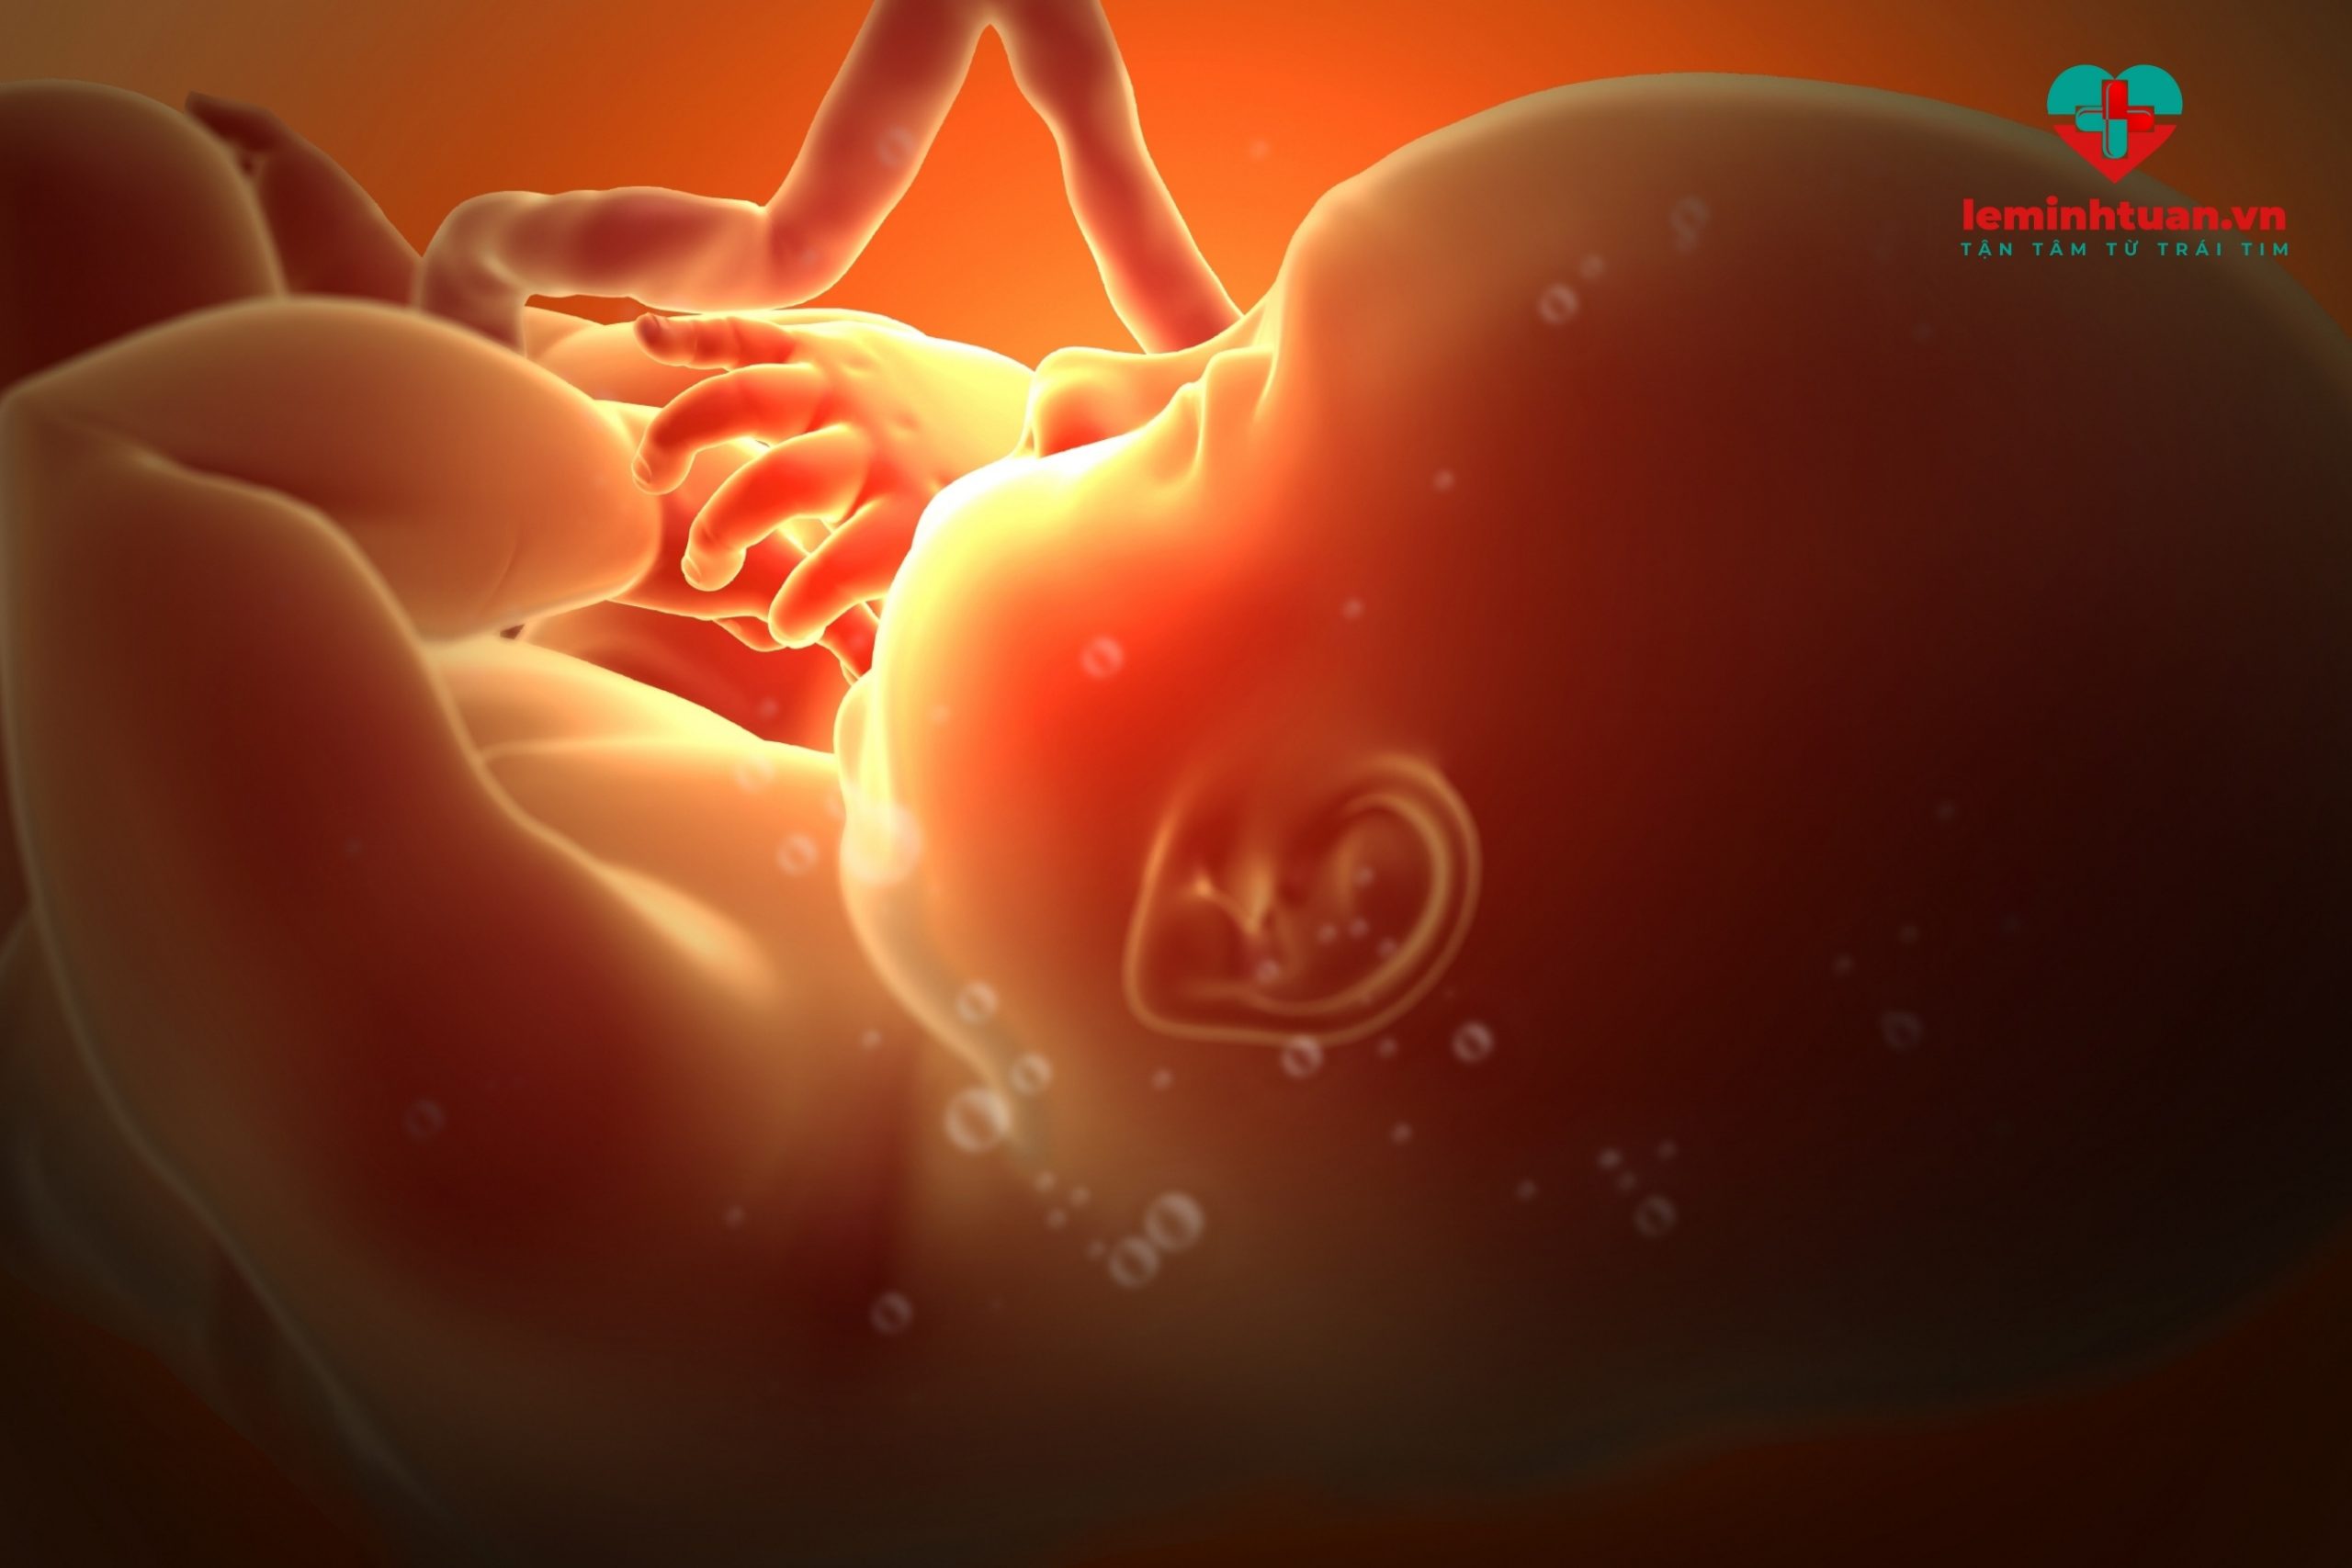 Thời kỳ bào thai - giai đoạn vàng tăng chiều cao cho trẻ em